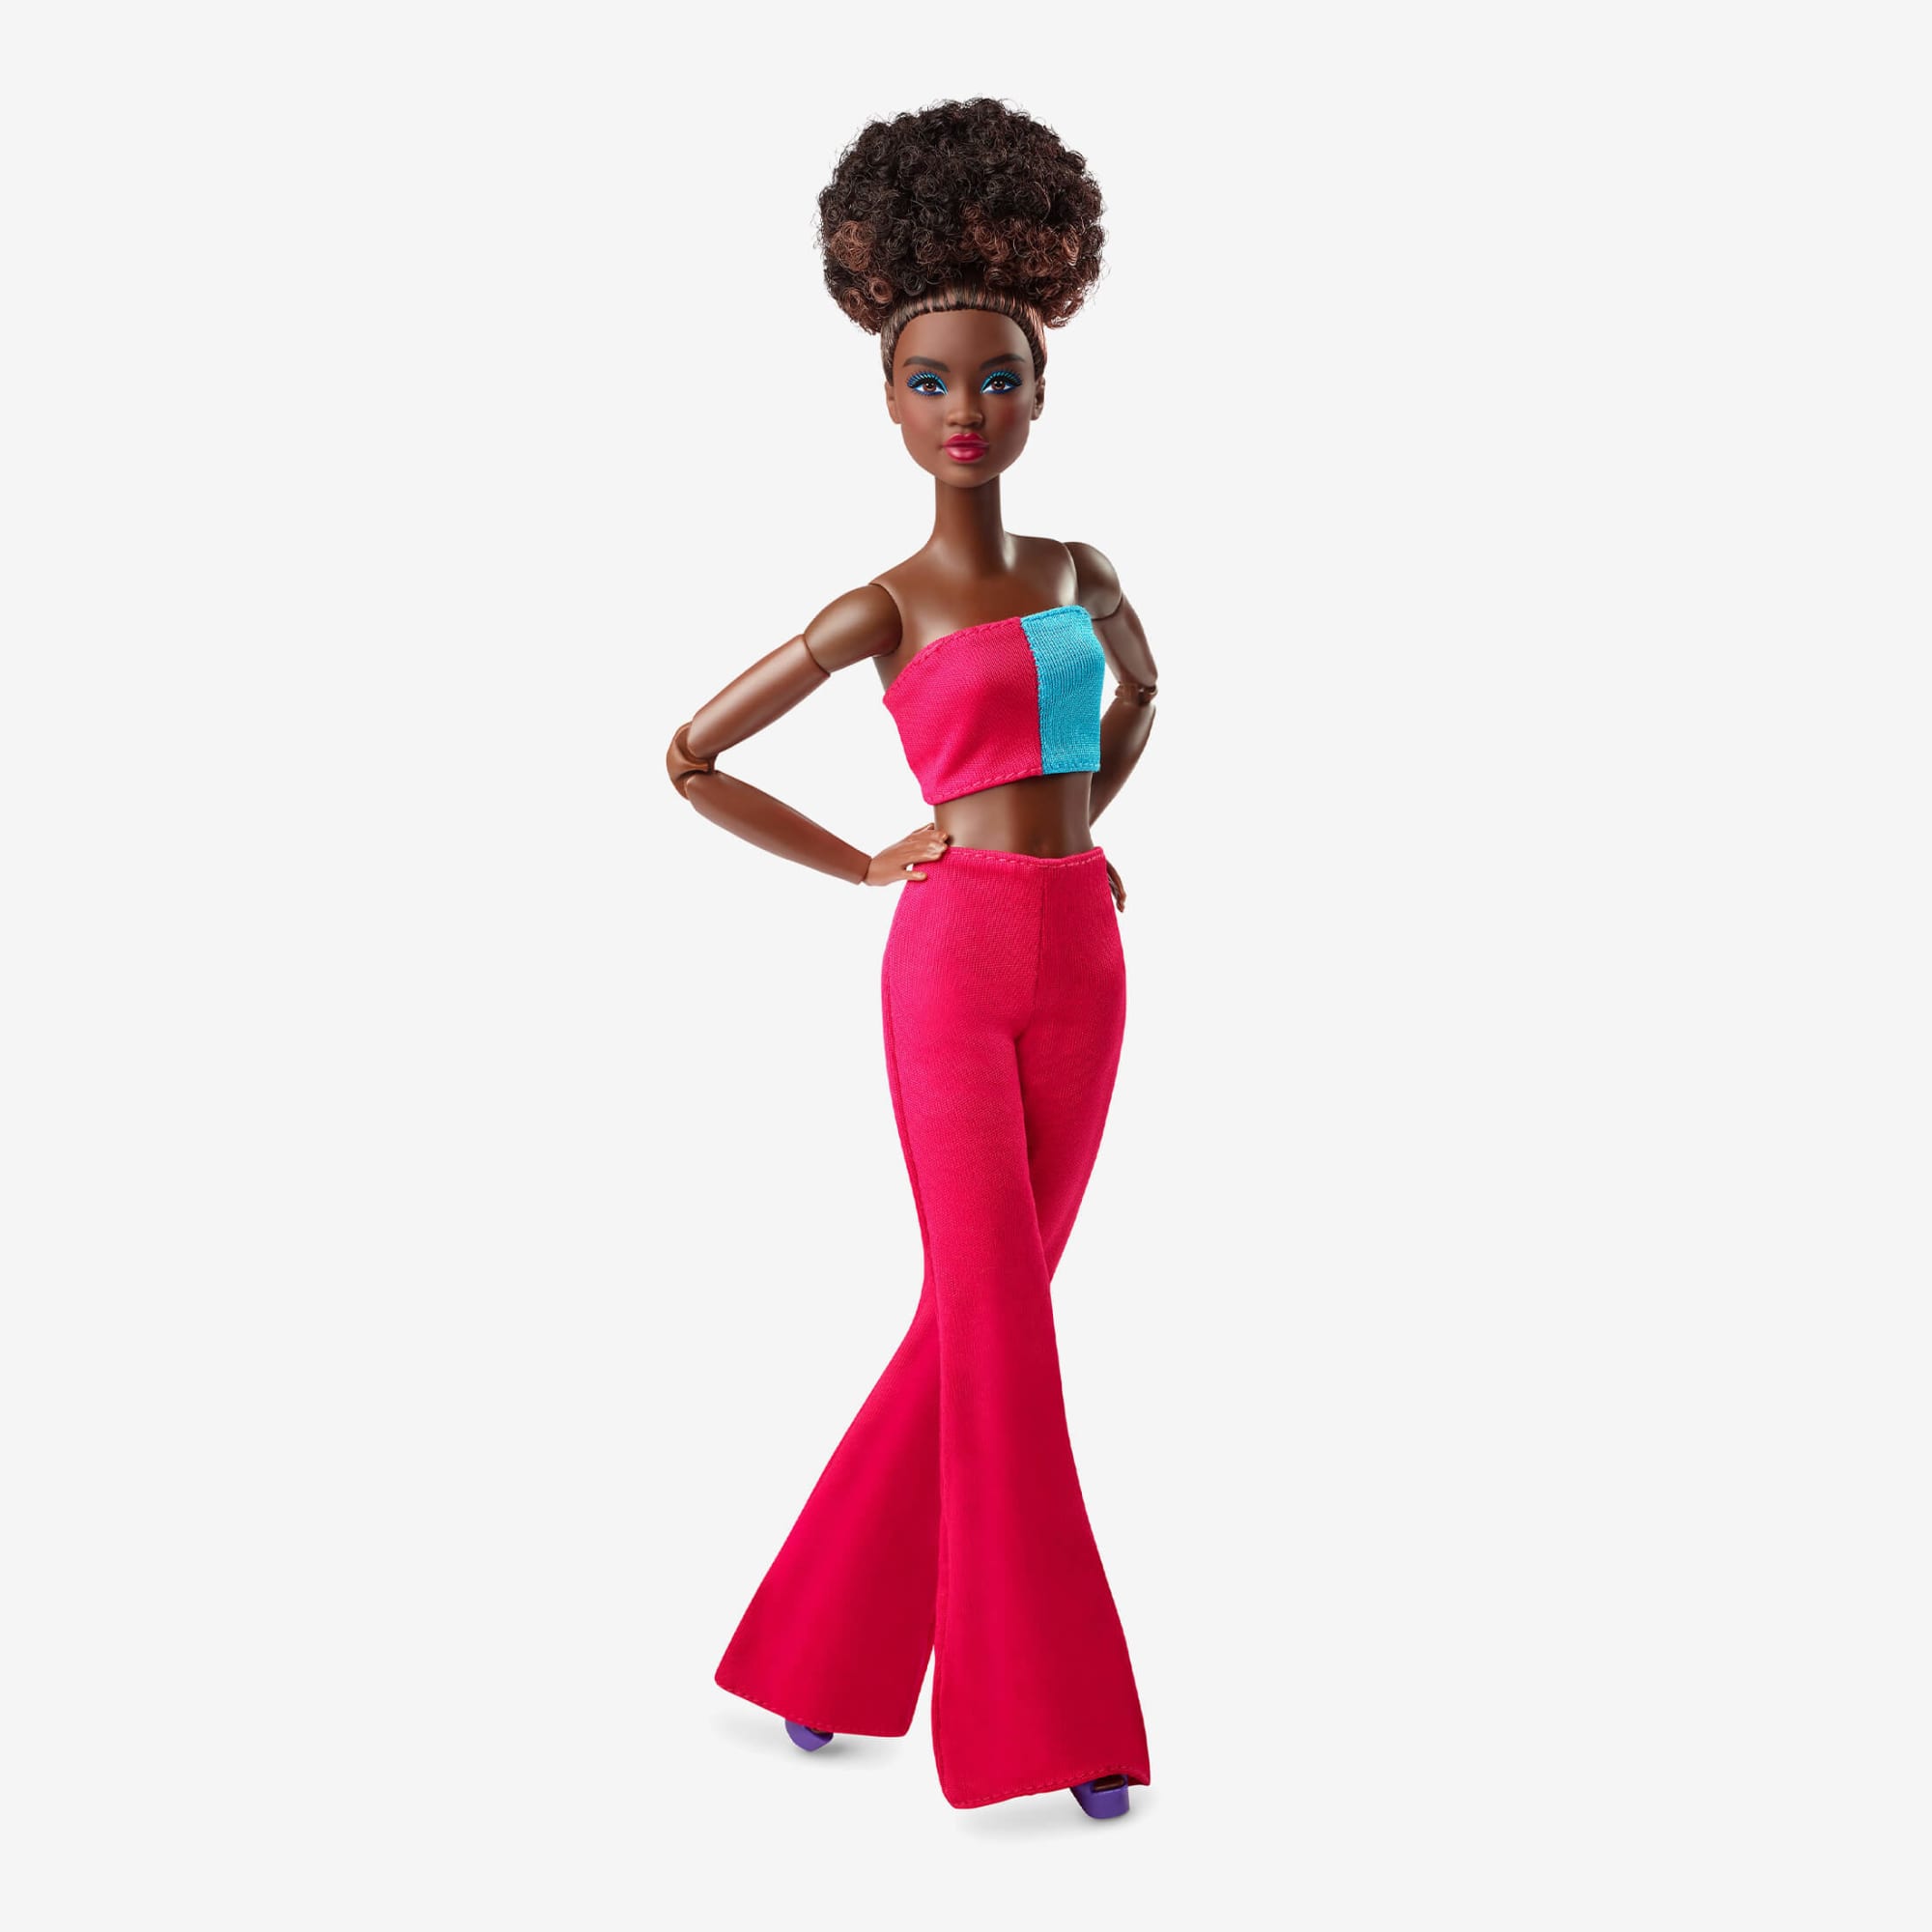 Buy Barbie Ken Doll Online in Pakistan - Barbie 2023